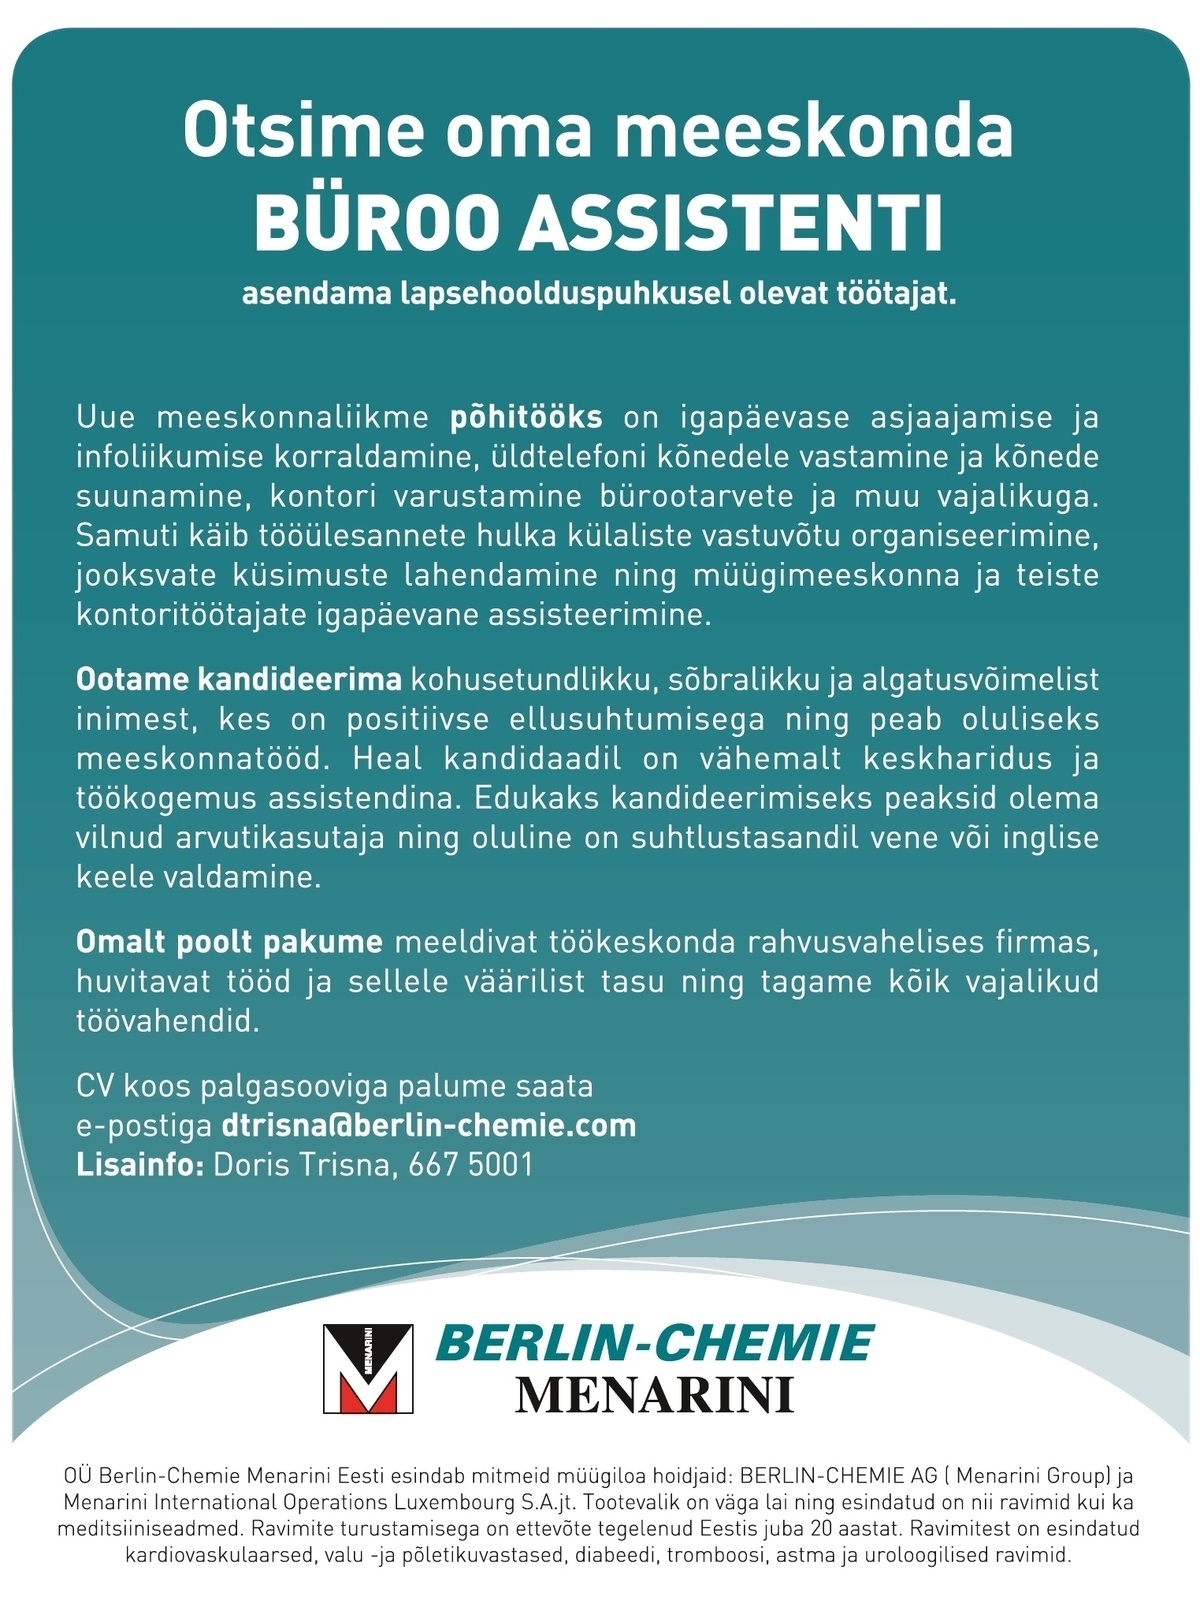 Berlin-Chemie Menarini Eesti OÜ Bürooassistent (lapsehoolduspuhkuse asendaja)